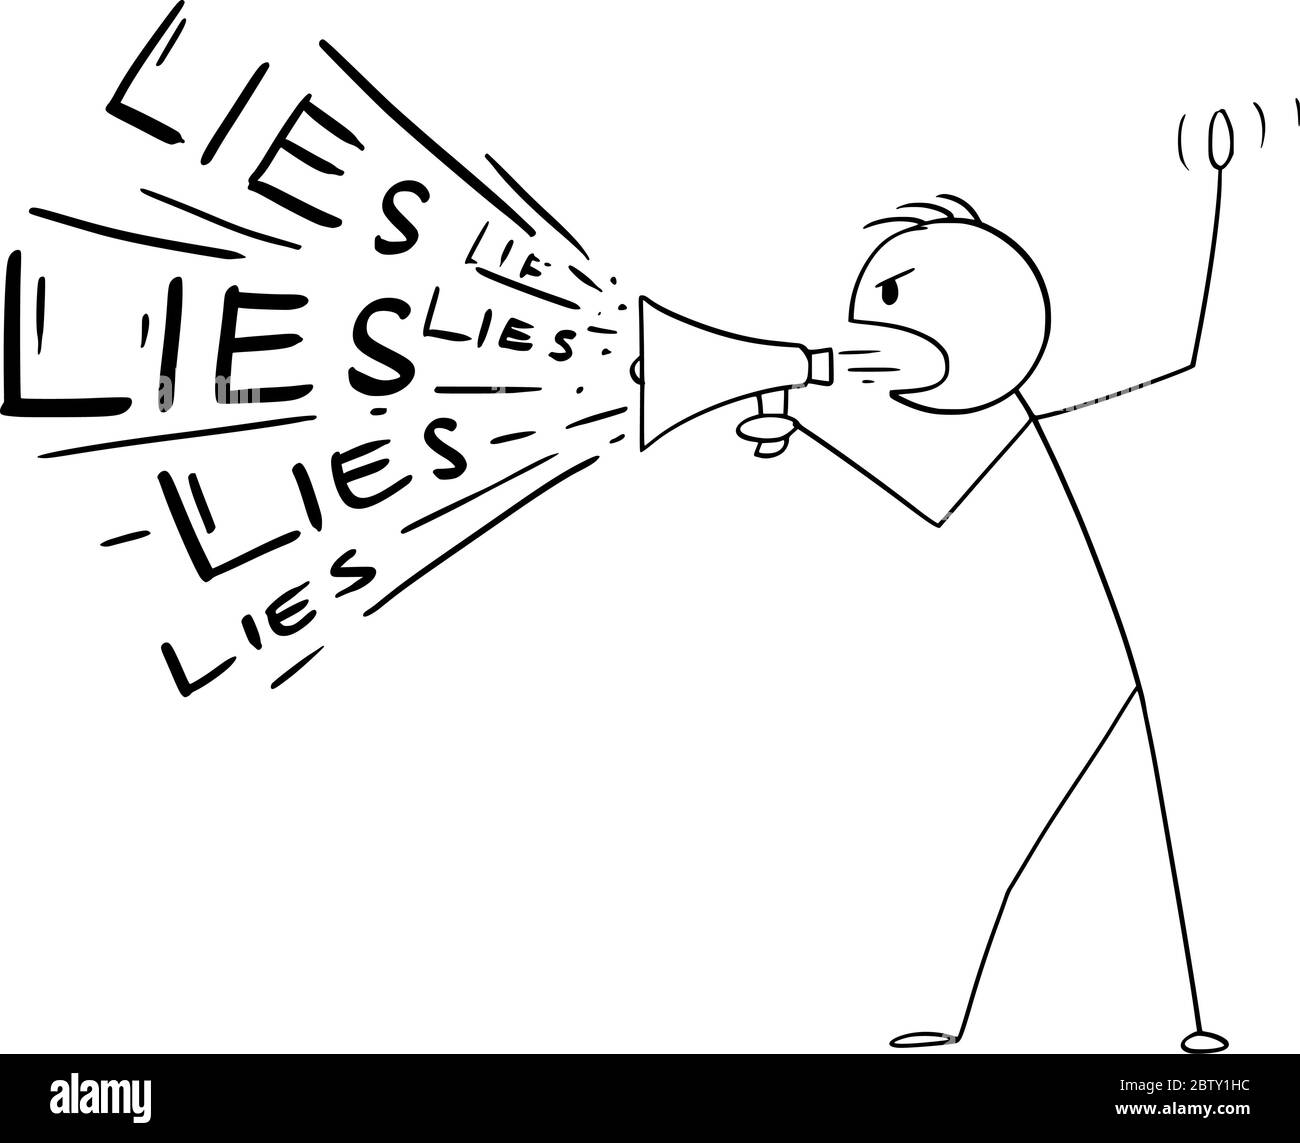 Figura del cartone vettoriale disegnando l'illustrazione concettuale dell'uomo o del politico usando l'altoparlante o il megafono per diffondere le bugie. Illustrazione Vettoriale